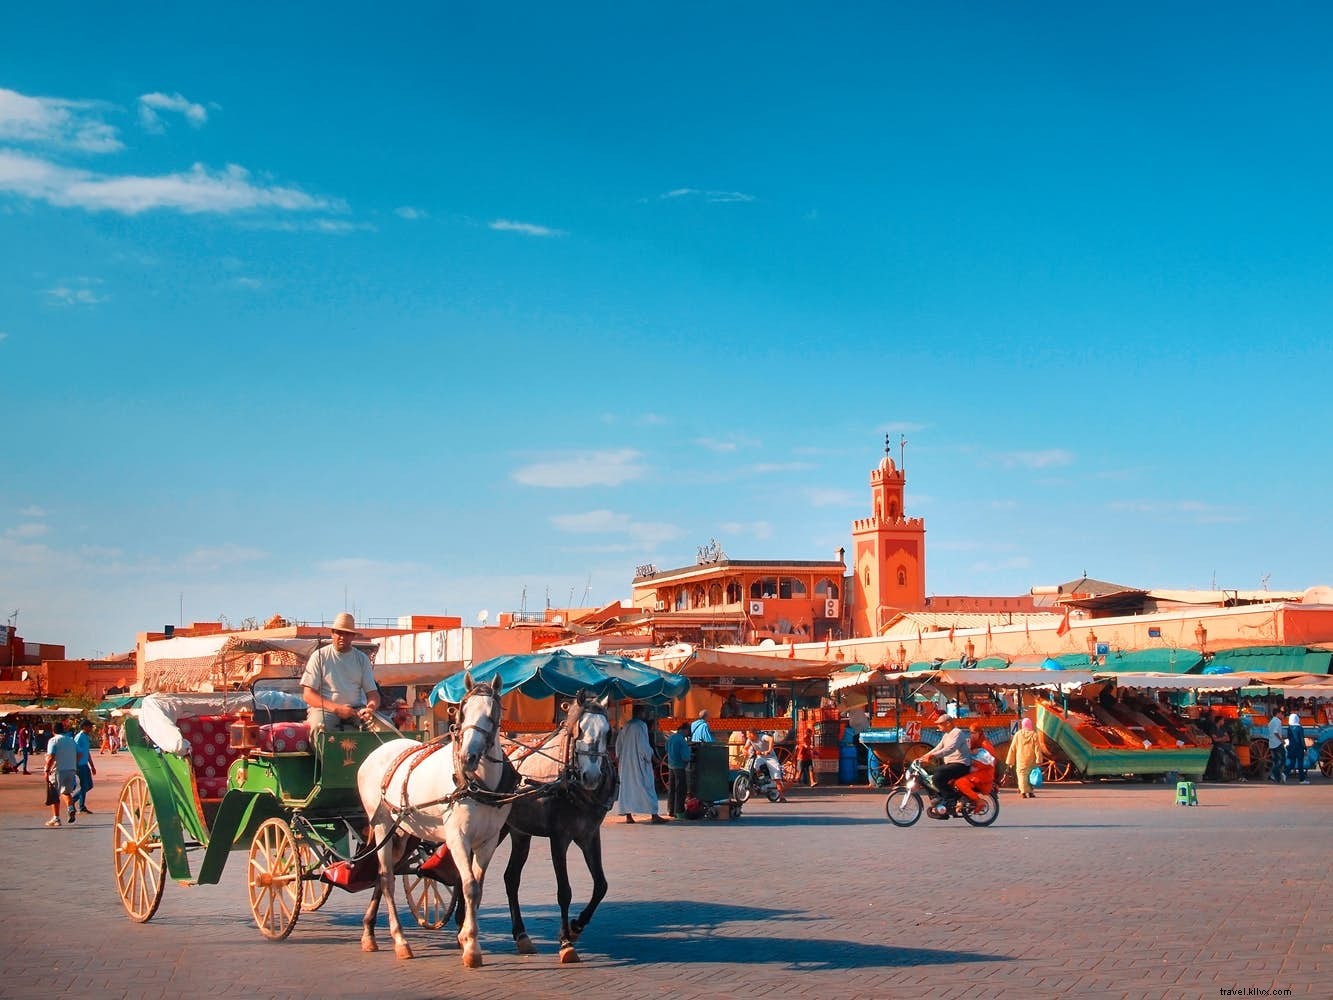 Un día en la vida de la plaza Djemaa el Fna de Marrakech 